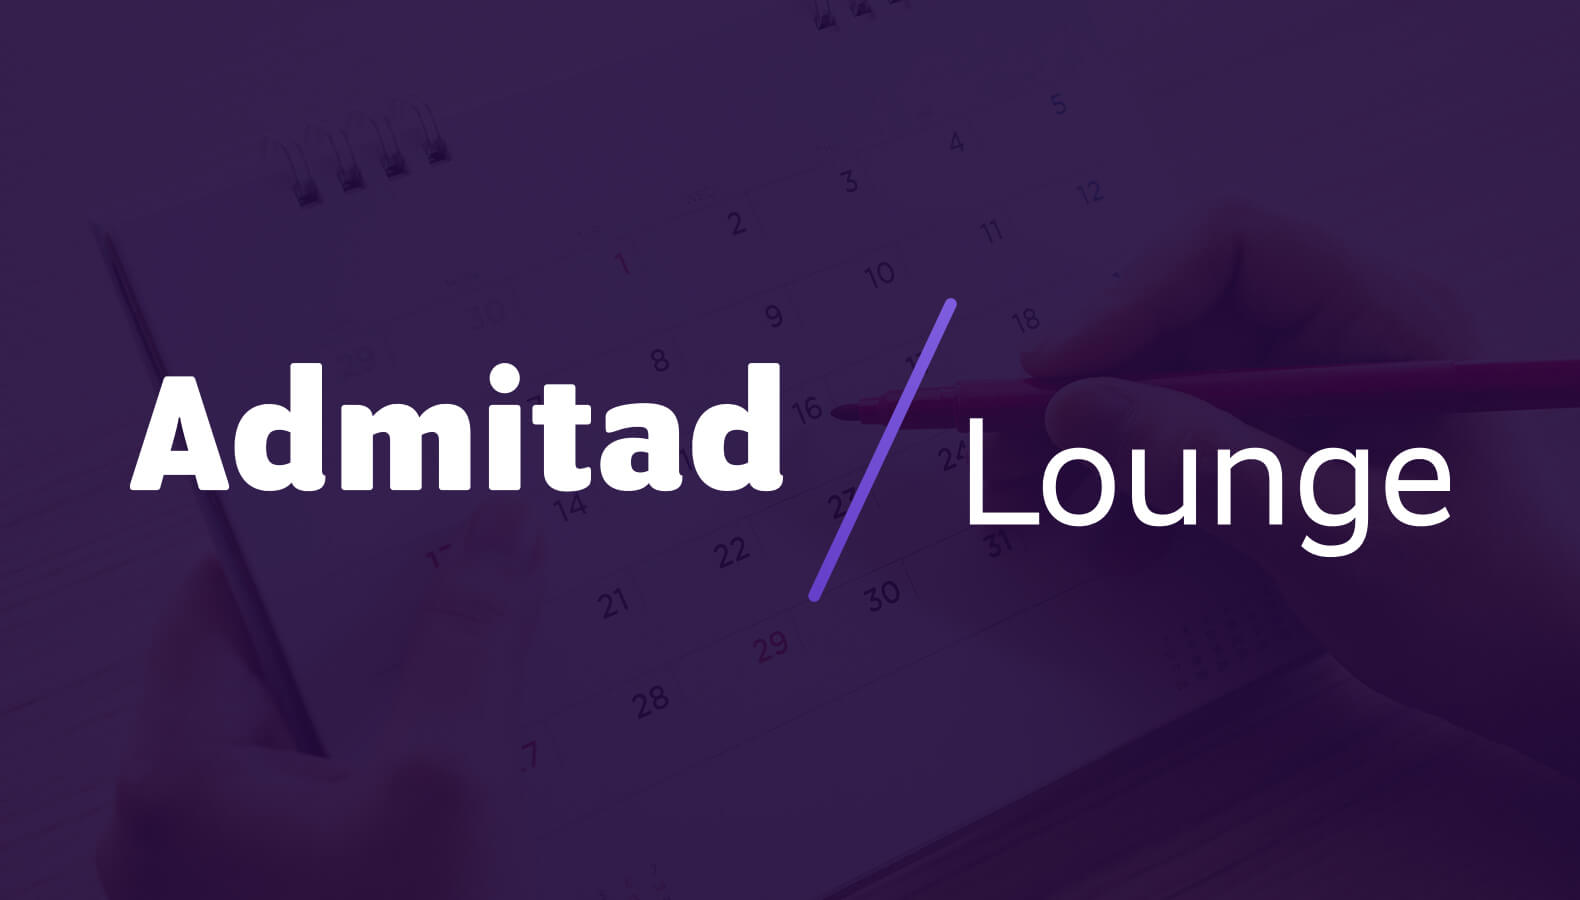 Admitad Lounge переносится на 24 июля